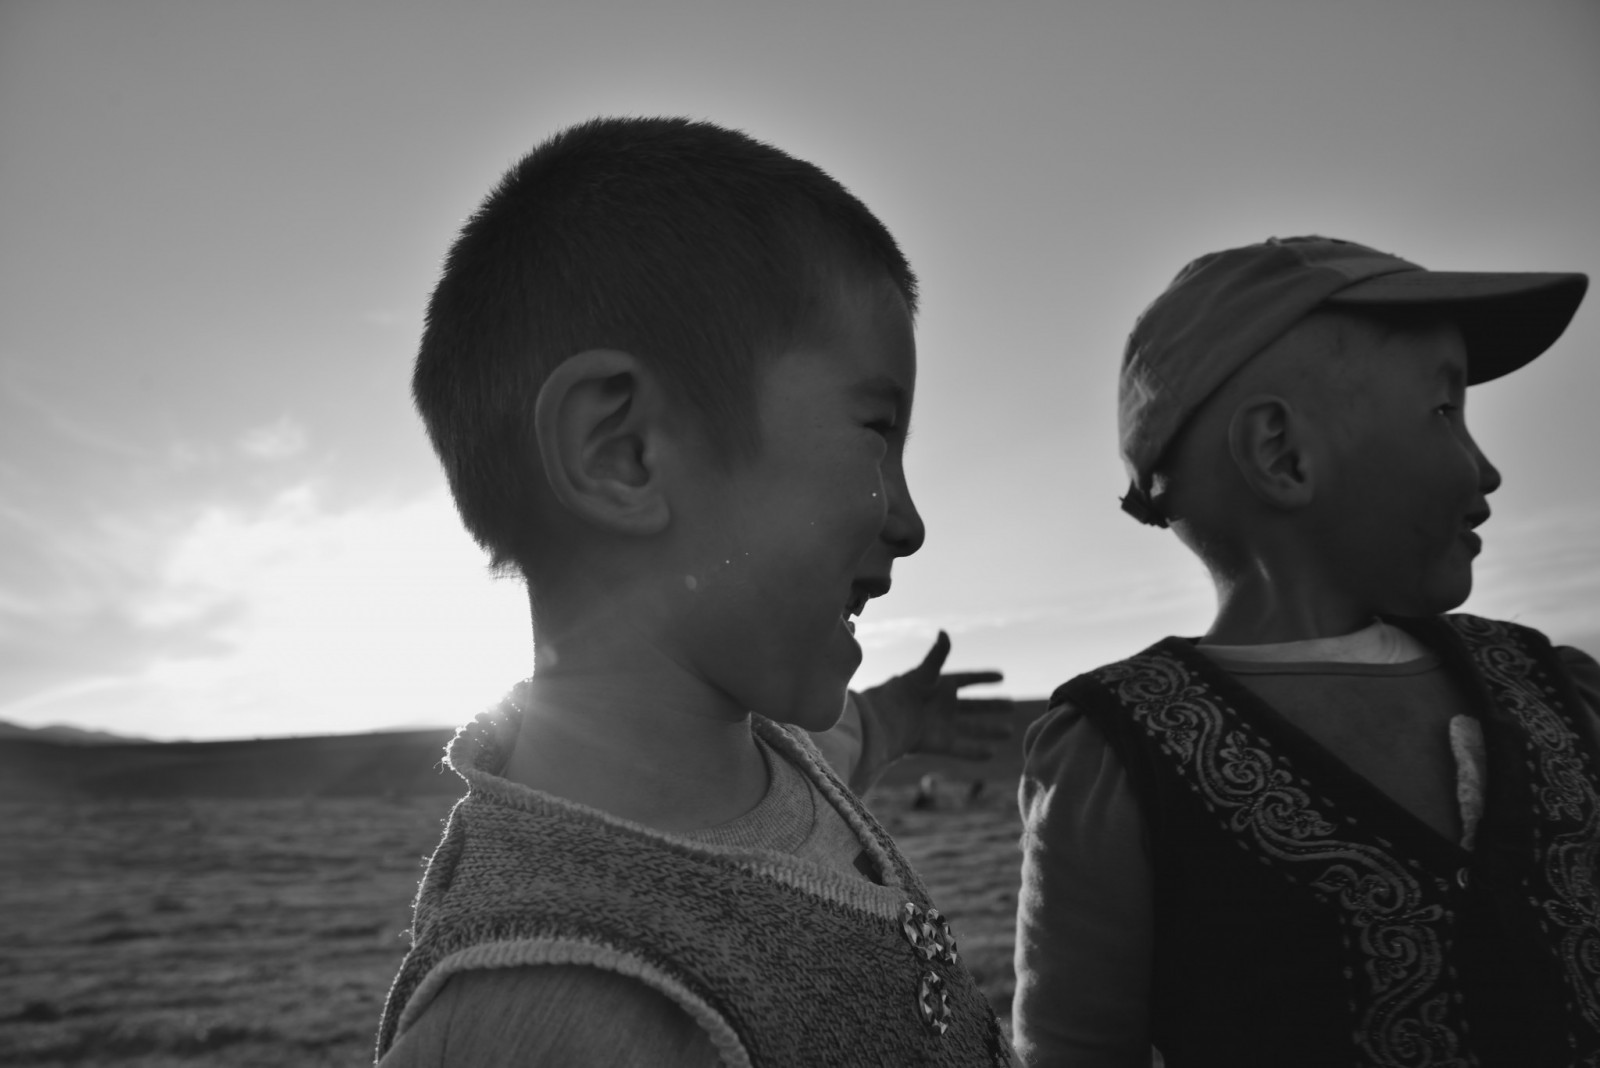 L'heureuse enfance, Xinjiang, 2013